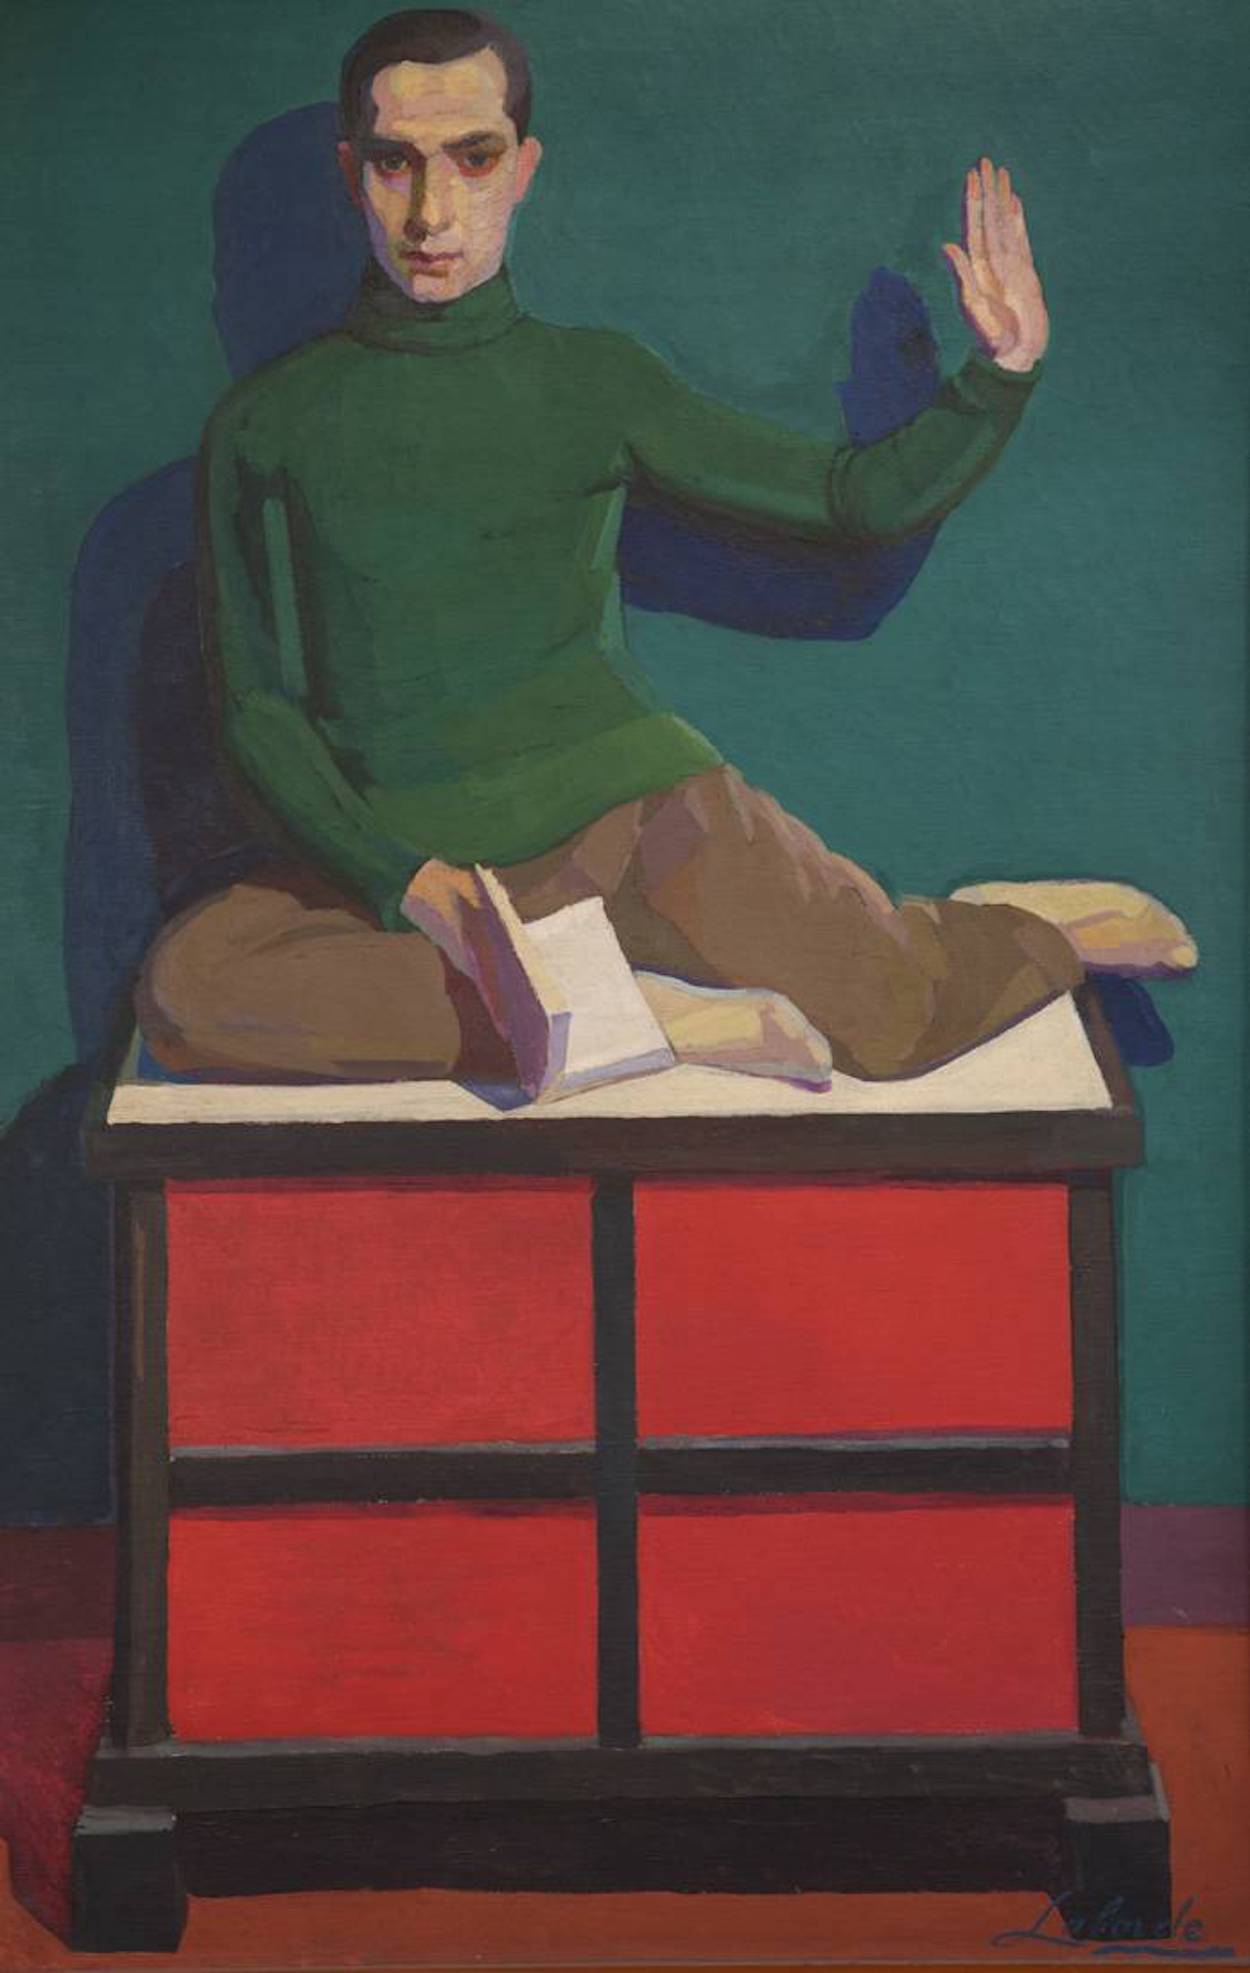 루이스 E. 폼보(Luis E. Pombo) by Guillermo Laborde - 약 1928년 - 200 x 250 cm 